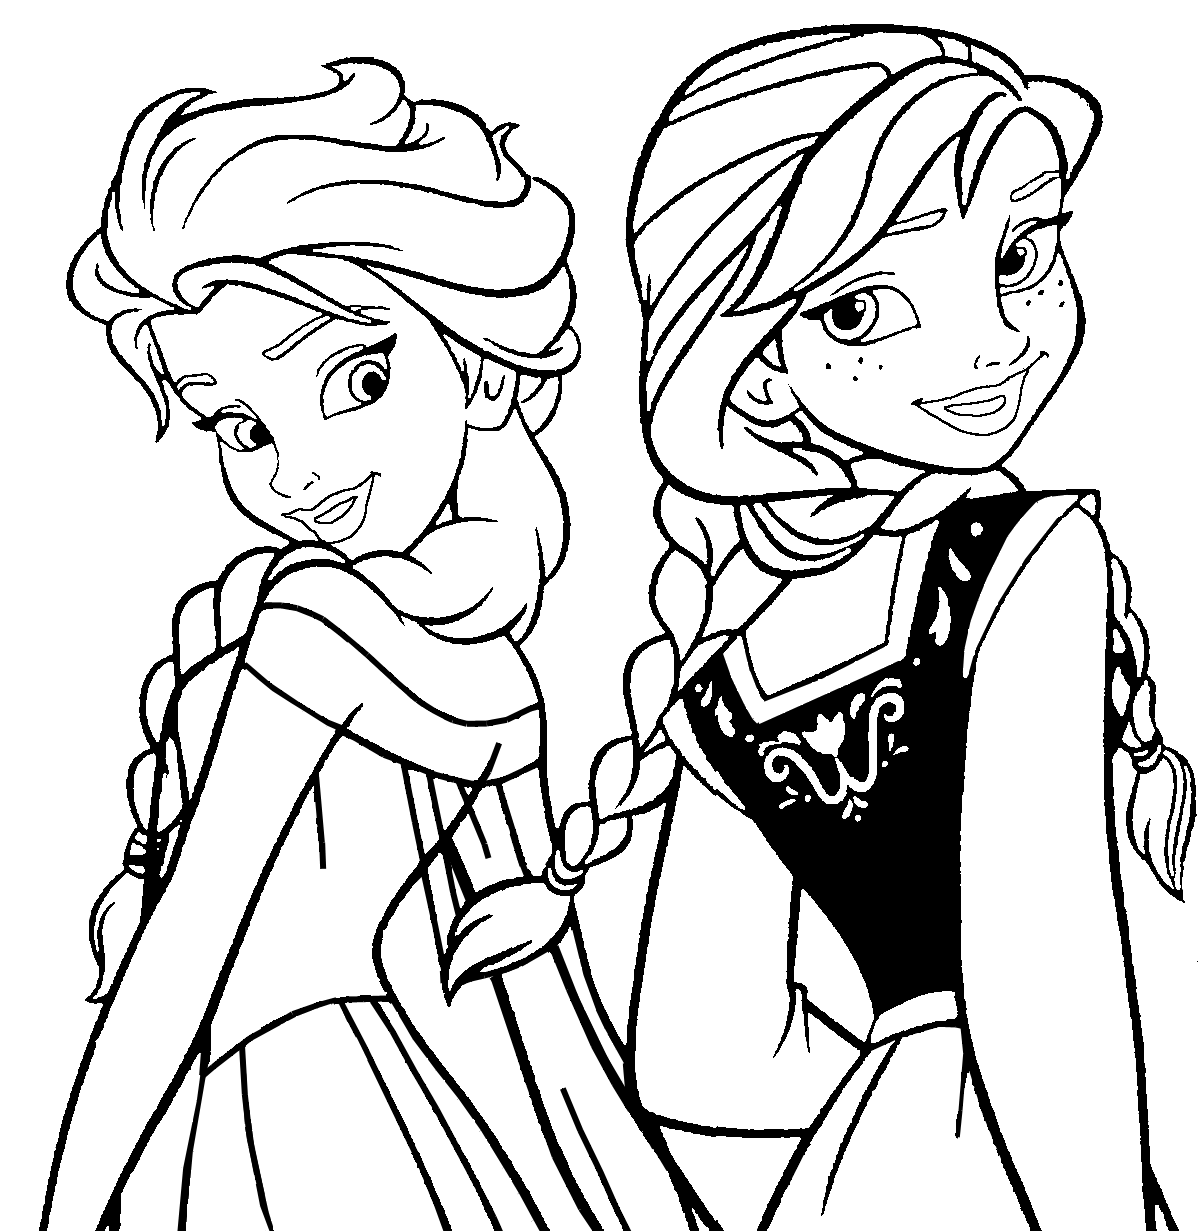 Dibujo para colorear de Elsa y Anna de Frozen